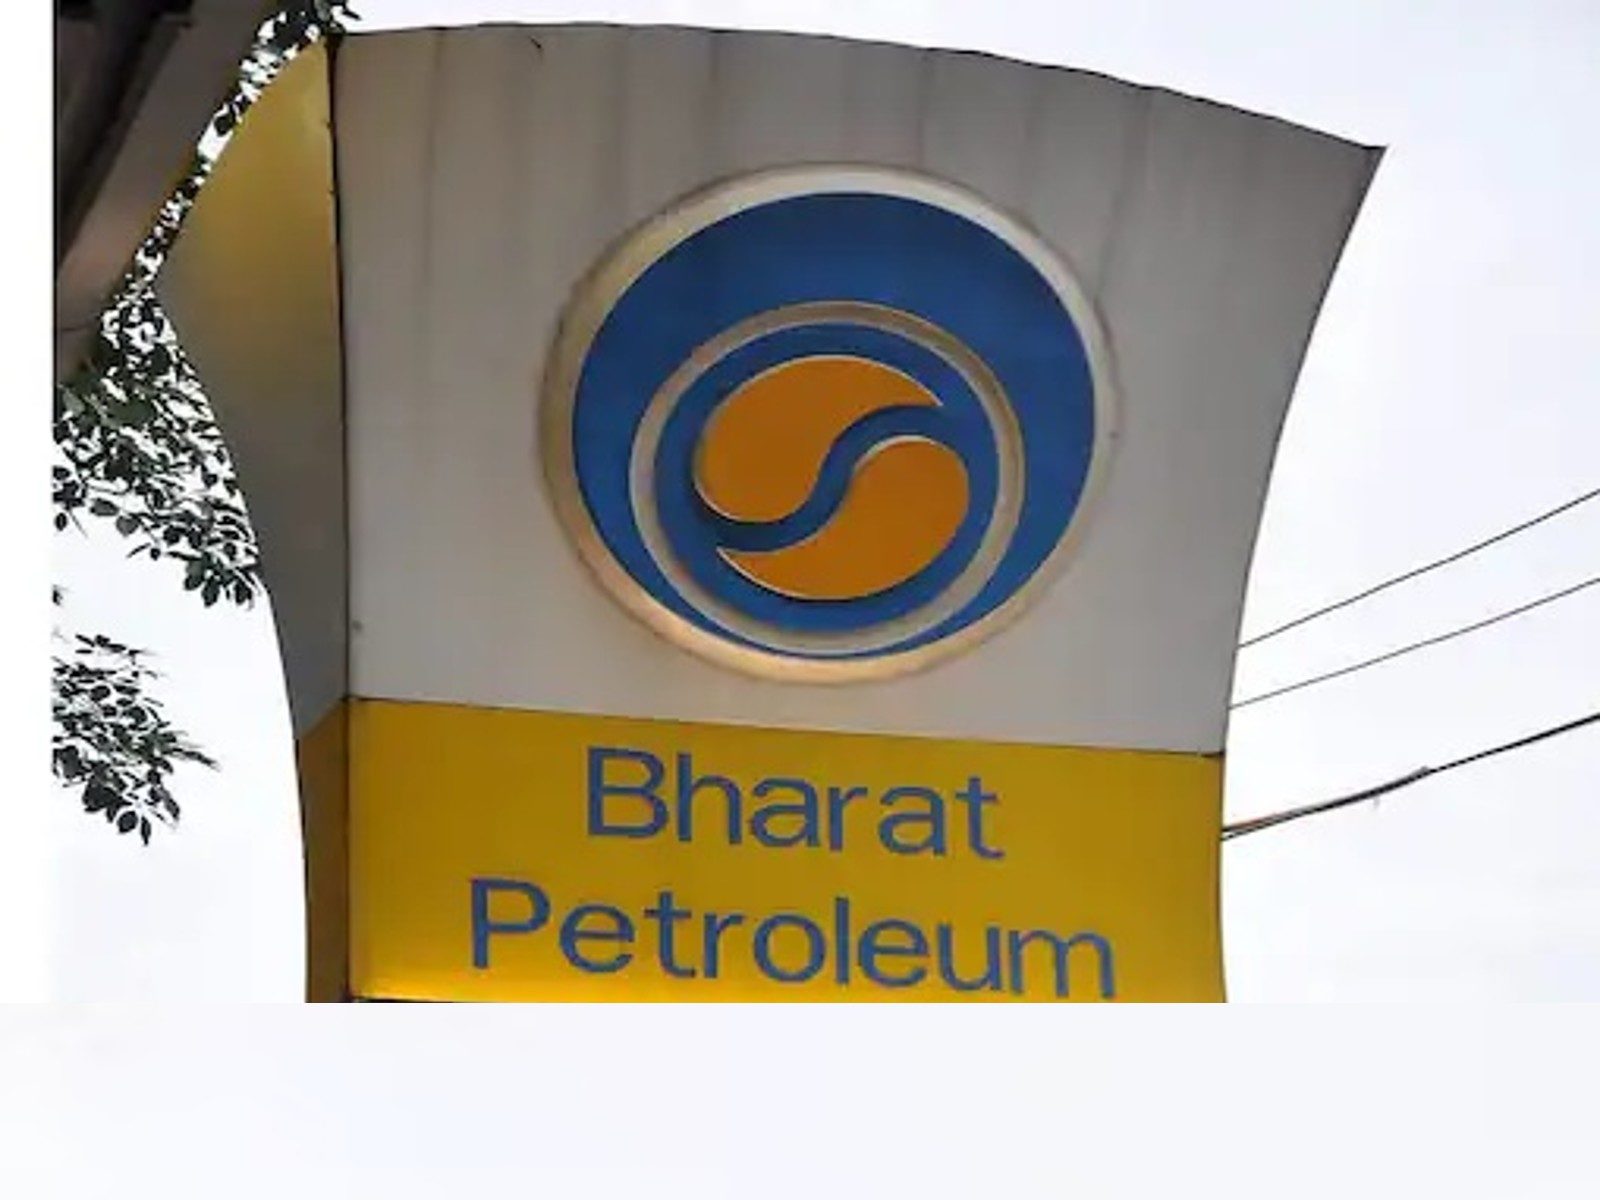 BPCL (Bharat Petroleum Corporation Limited) Complaint registration process  | Complaint portal 👇👇 - YouTube